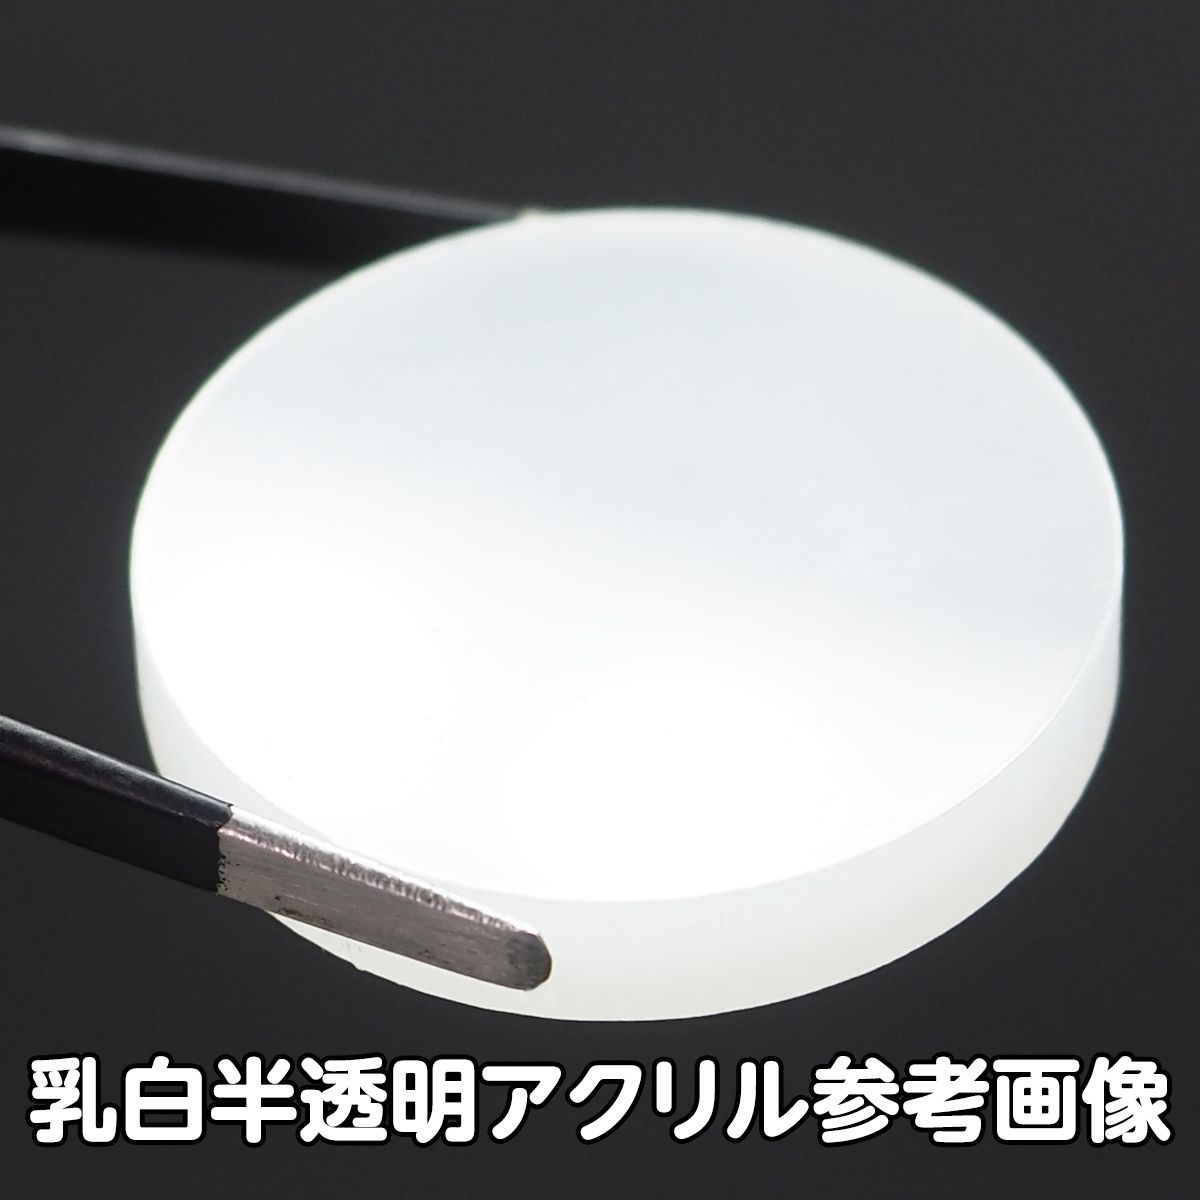 乳白半透明 アクリル 5mm厚 円形 直径10cm 4個セット